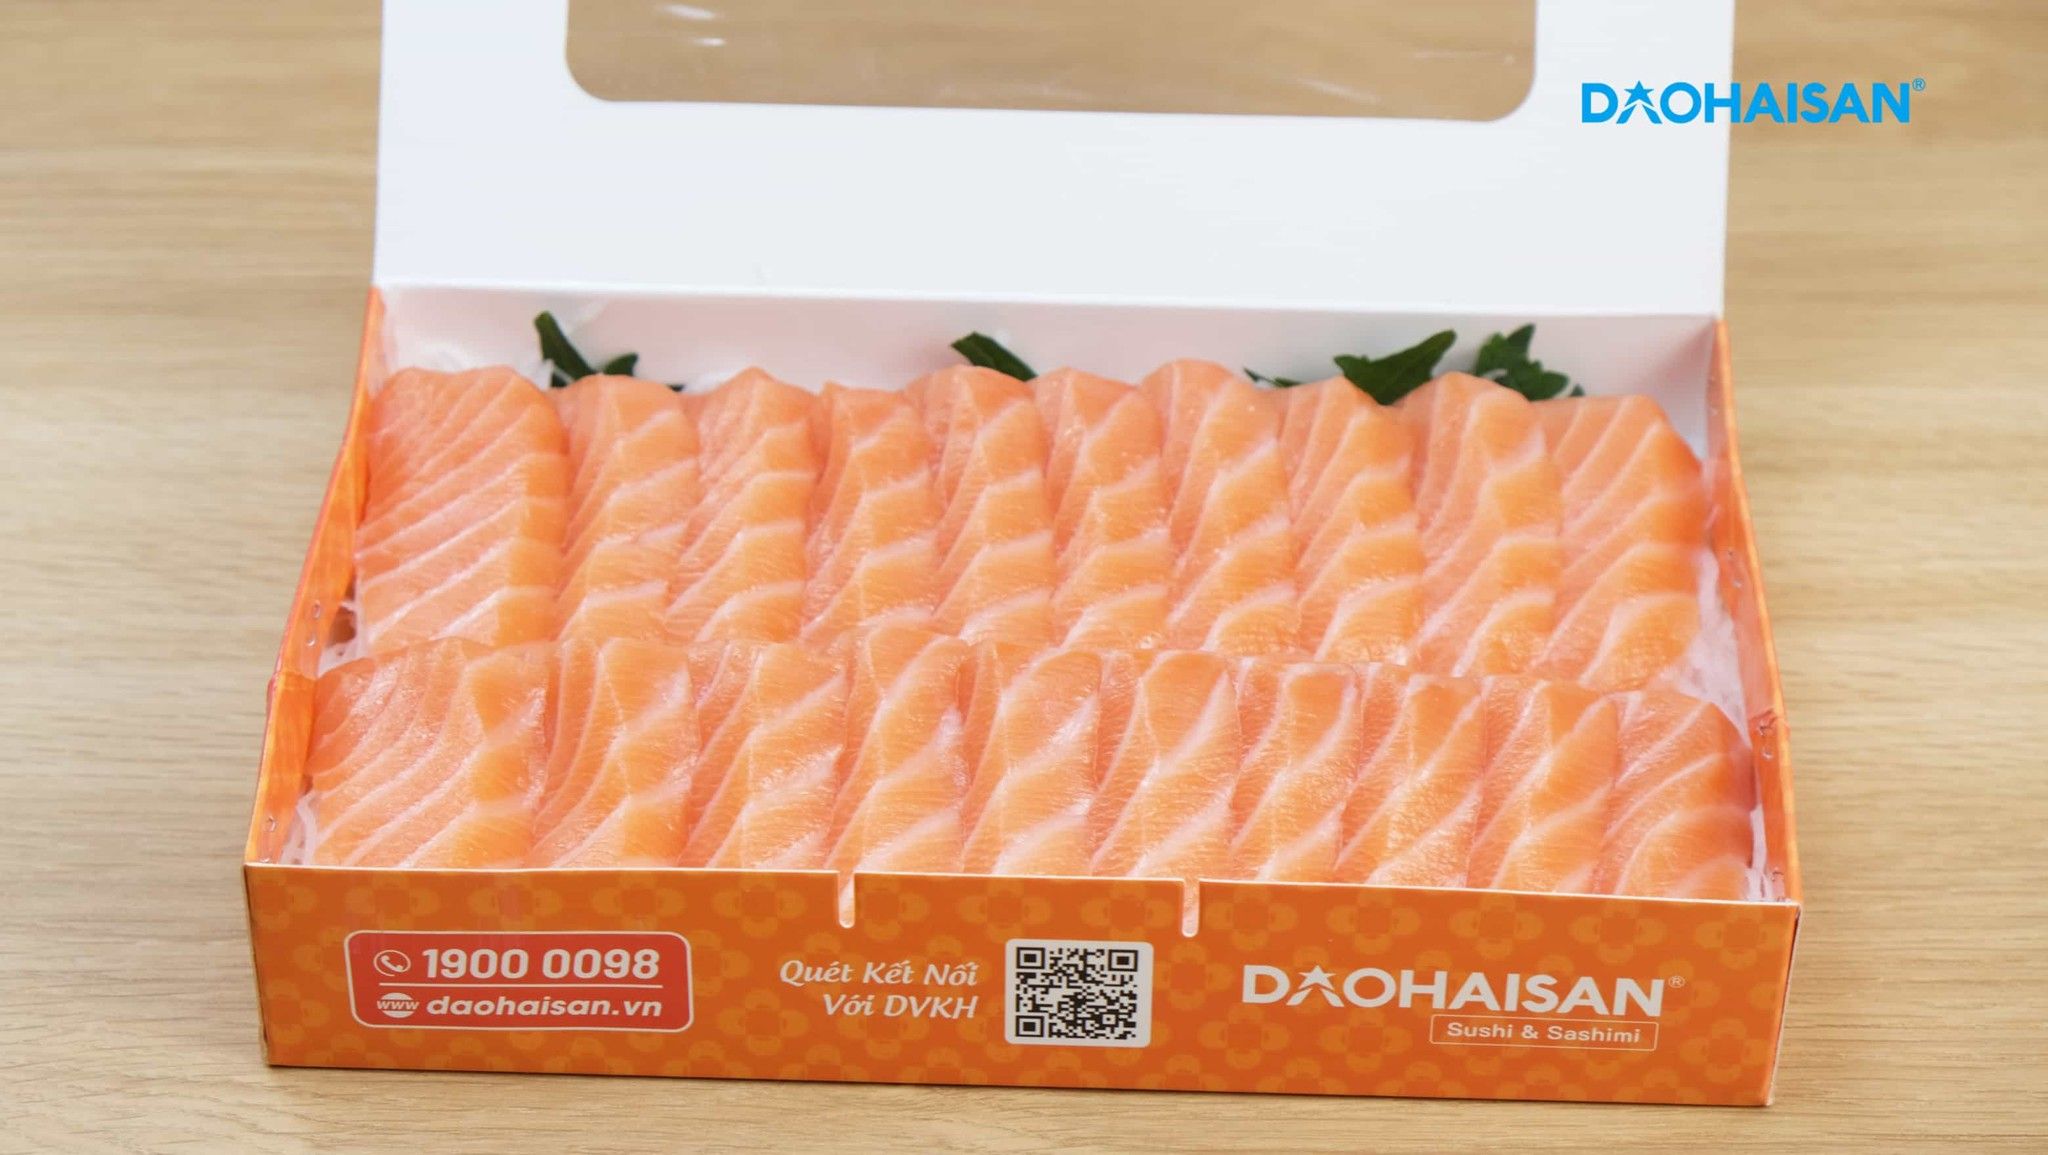 Cá hồi Sashimi trọng lượng 300g phù hợp cho 3 - 4 người dùng